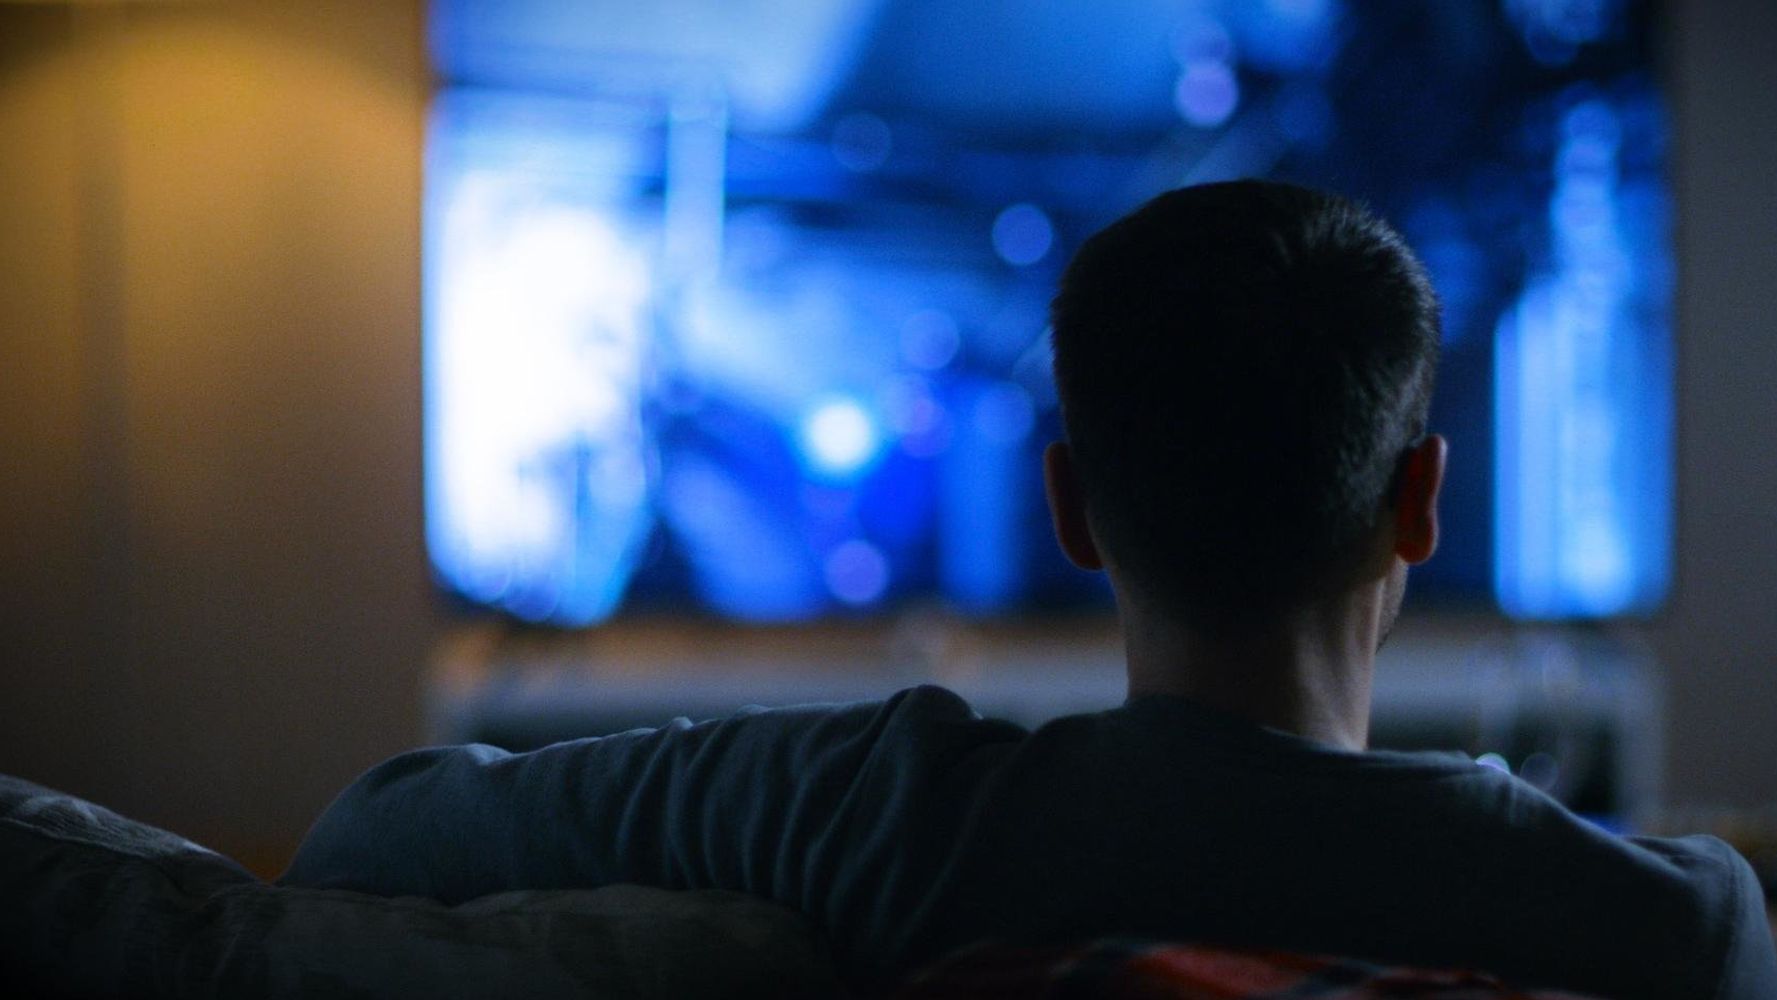 Громко смотрит телевизор. Человек перед телевизором. Люди ночью перед телевизором. Человек у телевизора ночью. Мужчина смотрит телевизор.